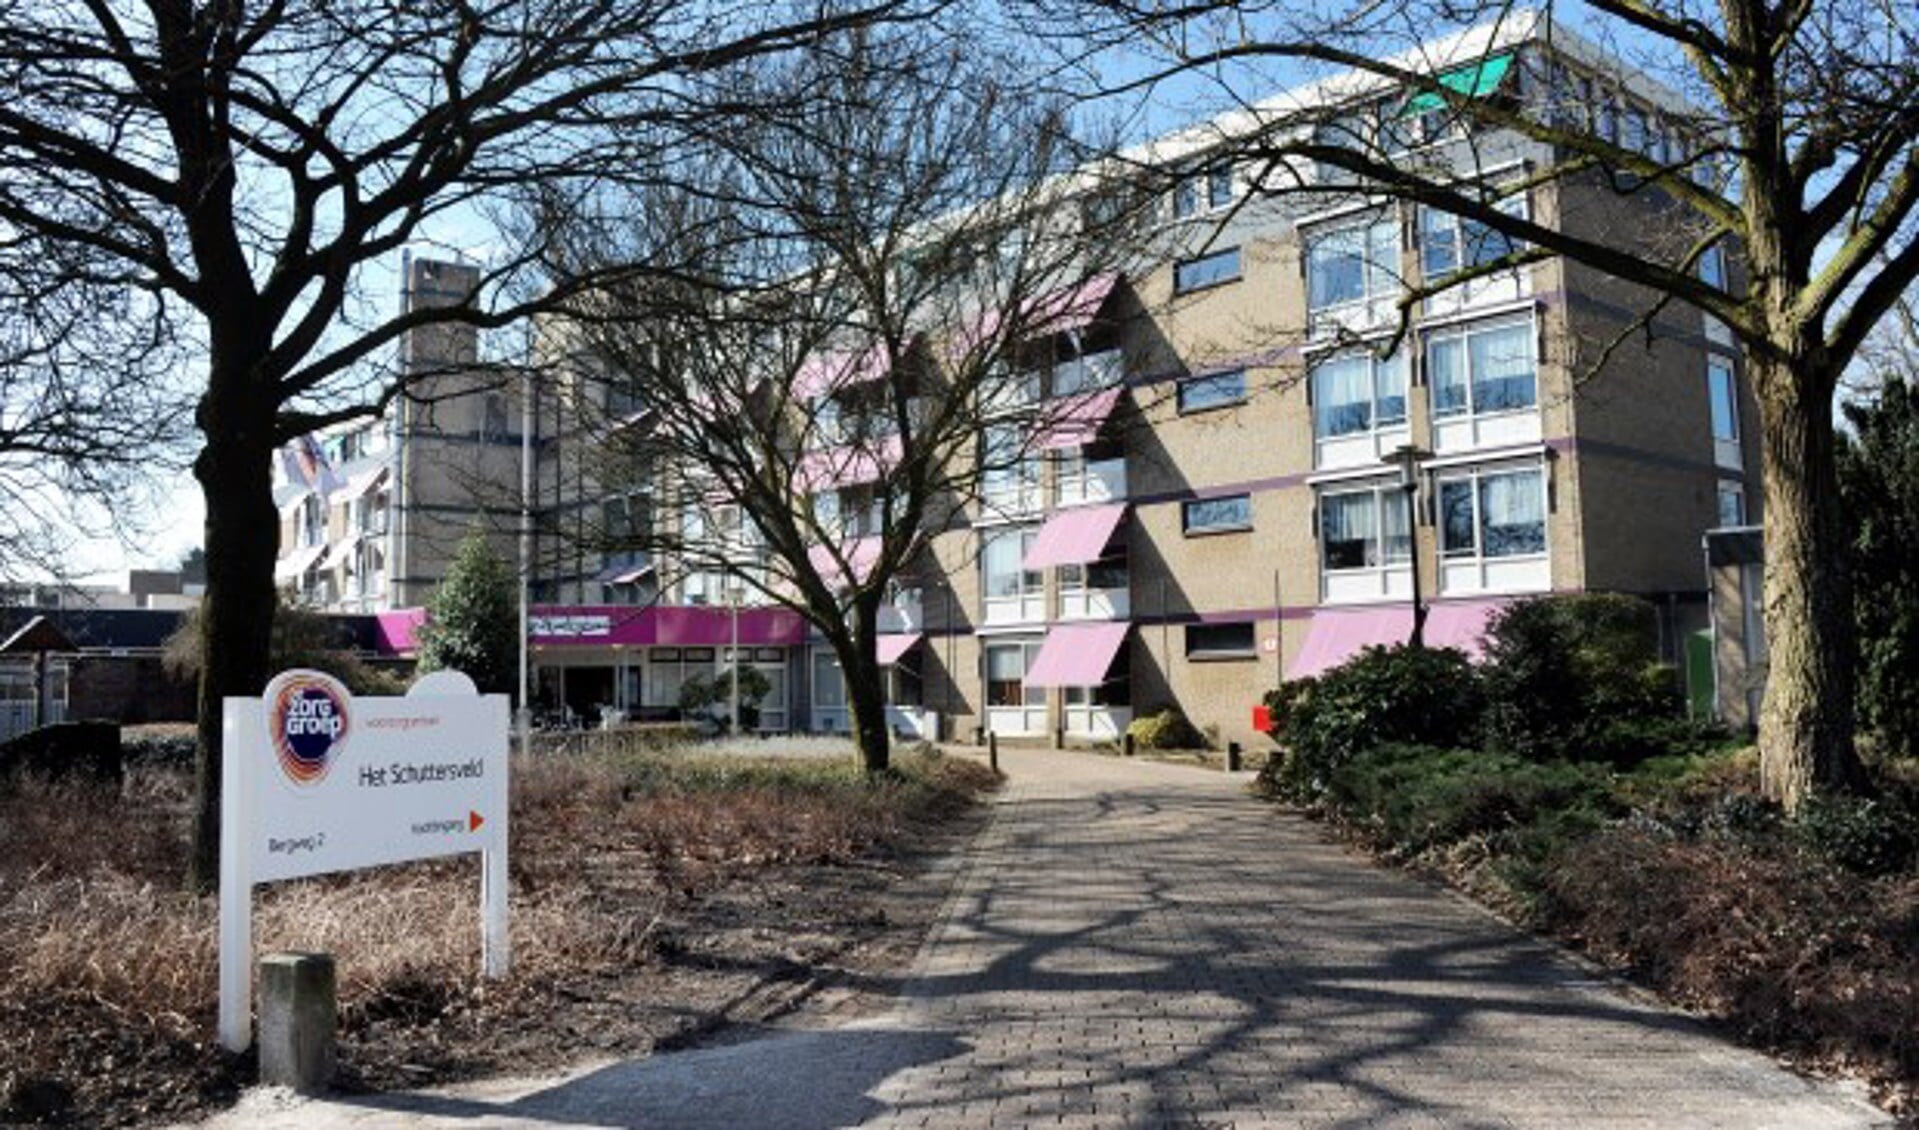 Vanaf 1 mei 2020 huren de bewoners van deze aanleunwoningen in Schuttersveld rechtstreeks van Wonen Limburg.